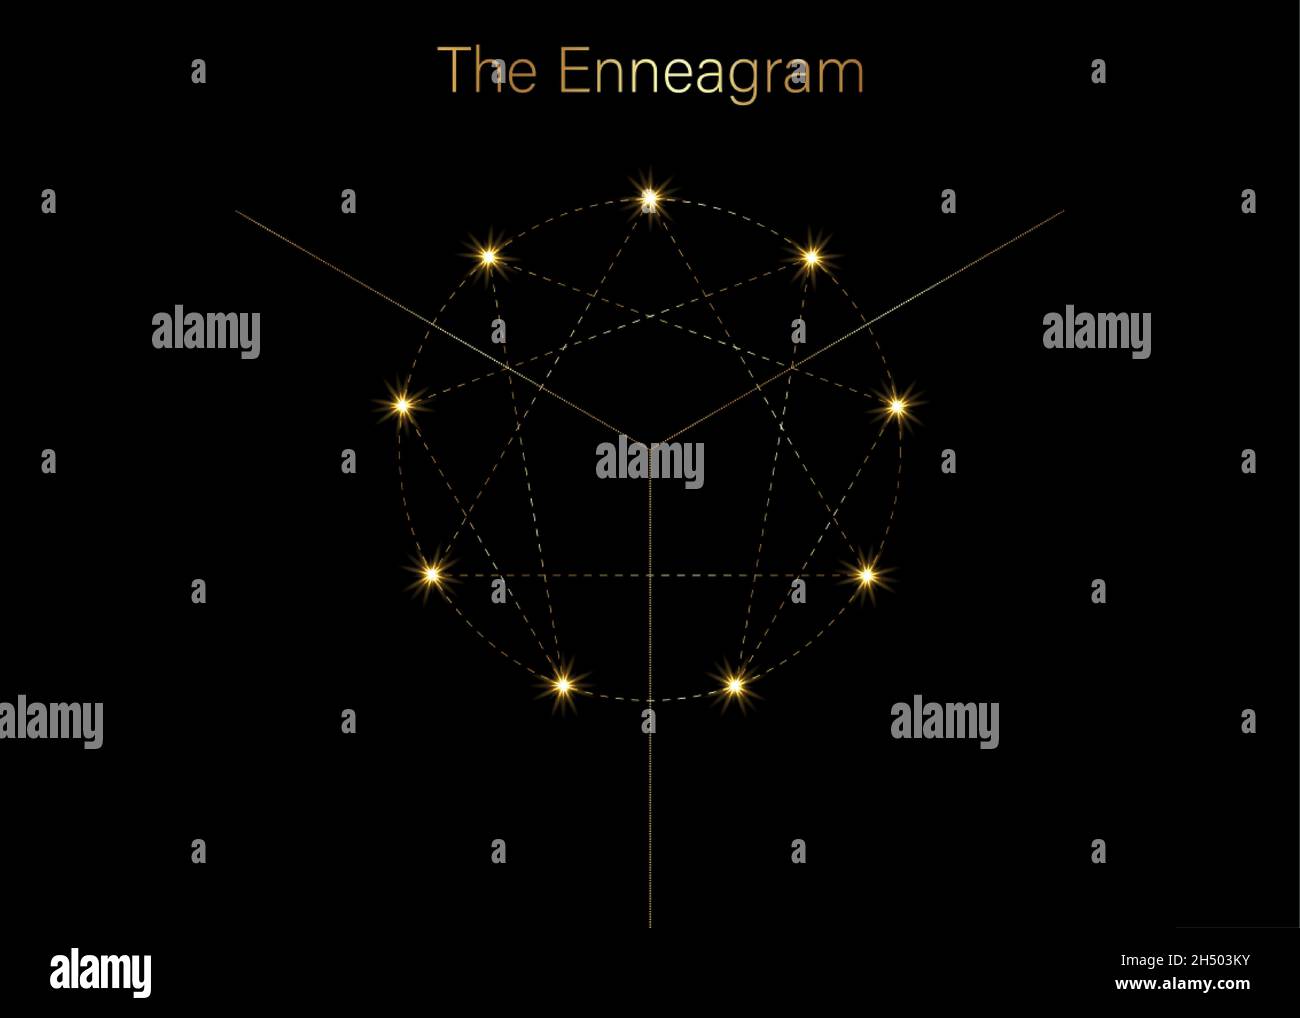 Icône Enneagram, géométrie sacrée de luxe doré, modèle de logo de diagramme, un à neuf concernant les neuf types de personnalité, style en pointillés dorés Illustration de Vecteur